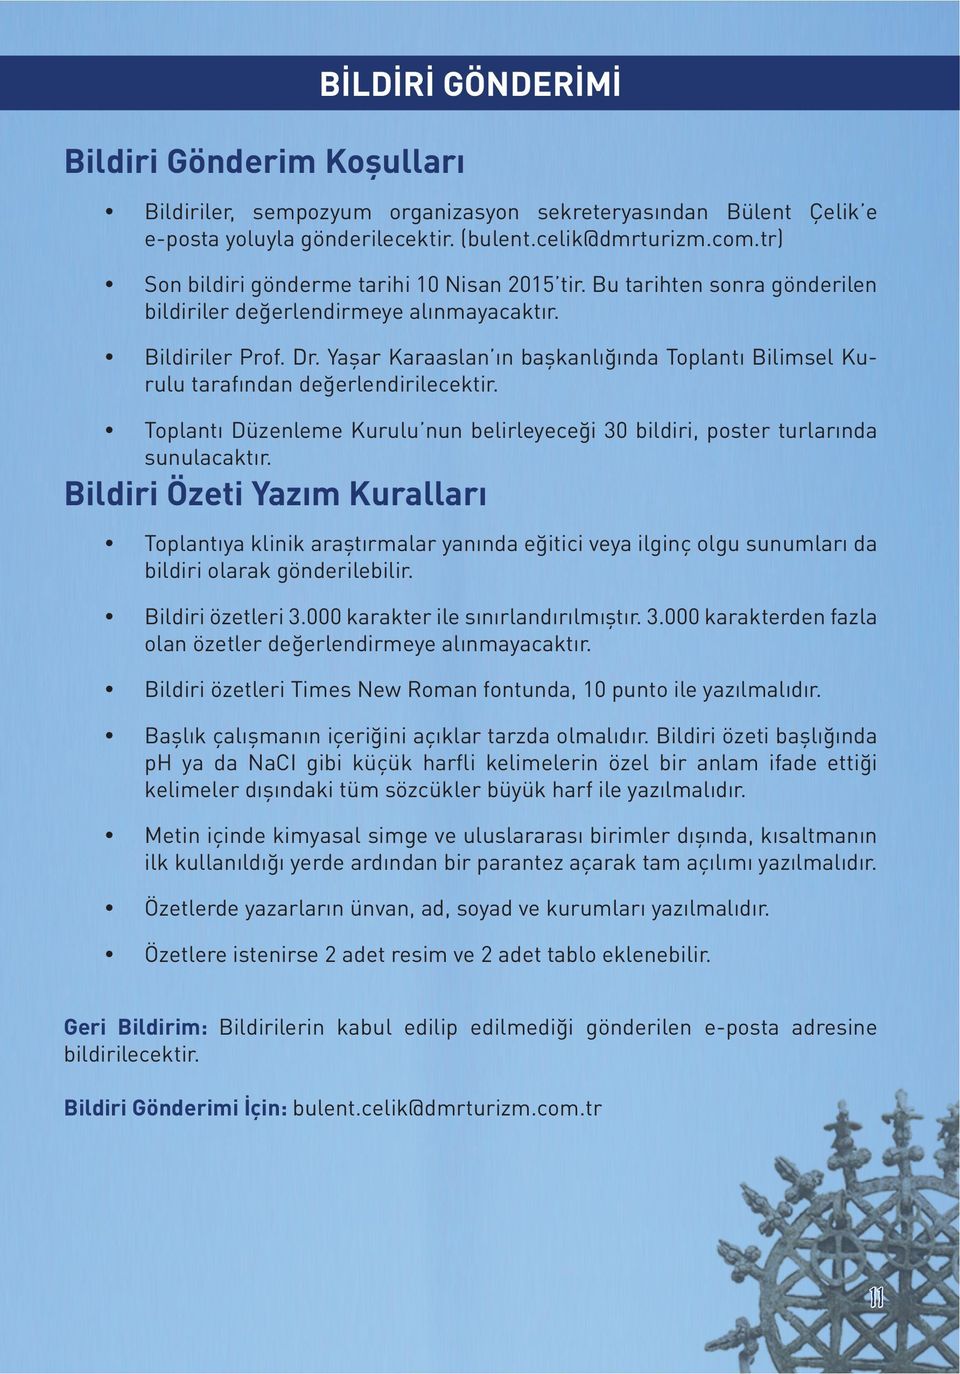 Yaşar Karaaslan ın başkanlığında Toplantı Bilimsel Kurulu tarafından değerlendirilecektir. Toplantı Düzenleme Kurulu nun belirleyeceği 30 bildiri, poster turlarında sunulacaktır.